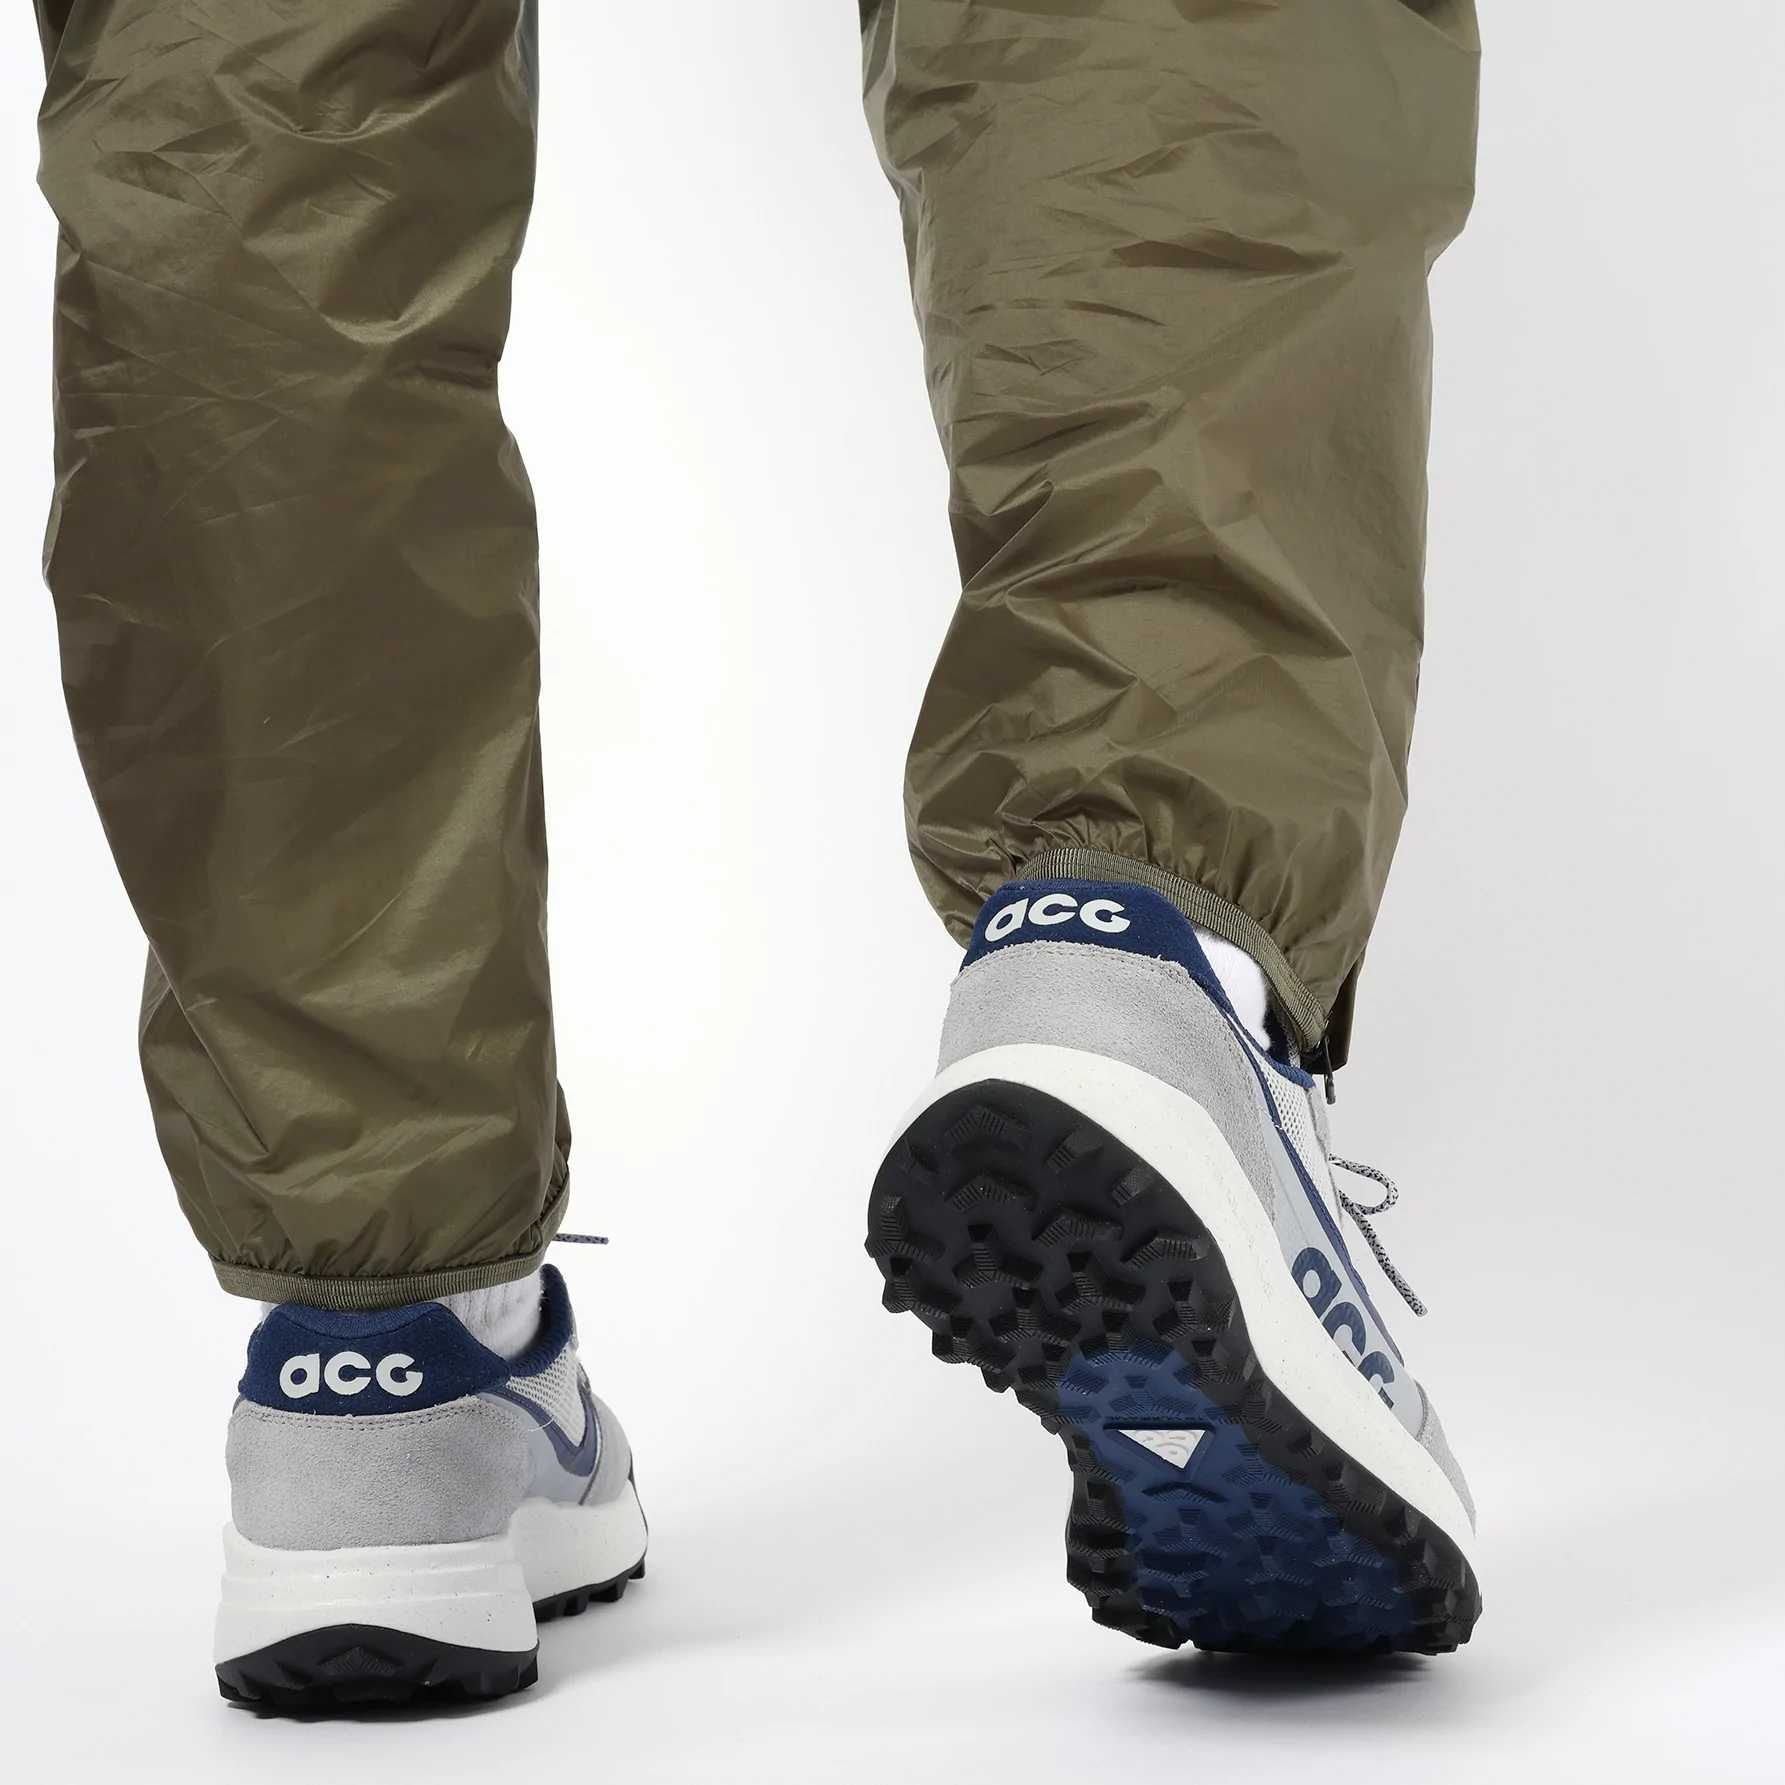 ADIDASI  OriginalI  100% Nike Nike ACG Lowcate TRAIL FRAME Men's nr 40